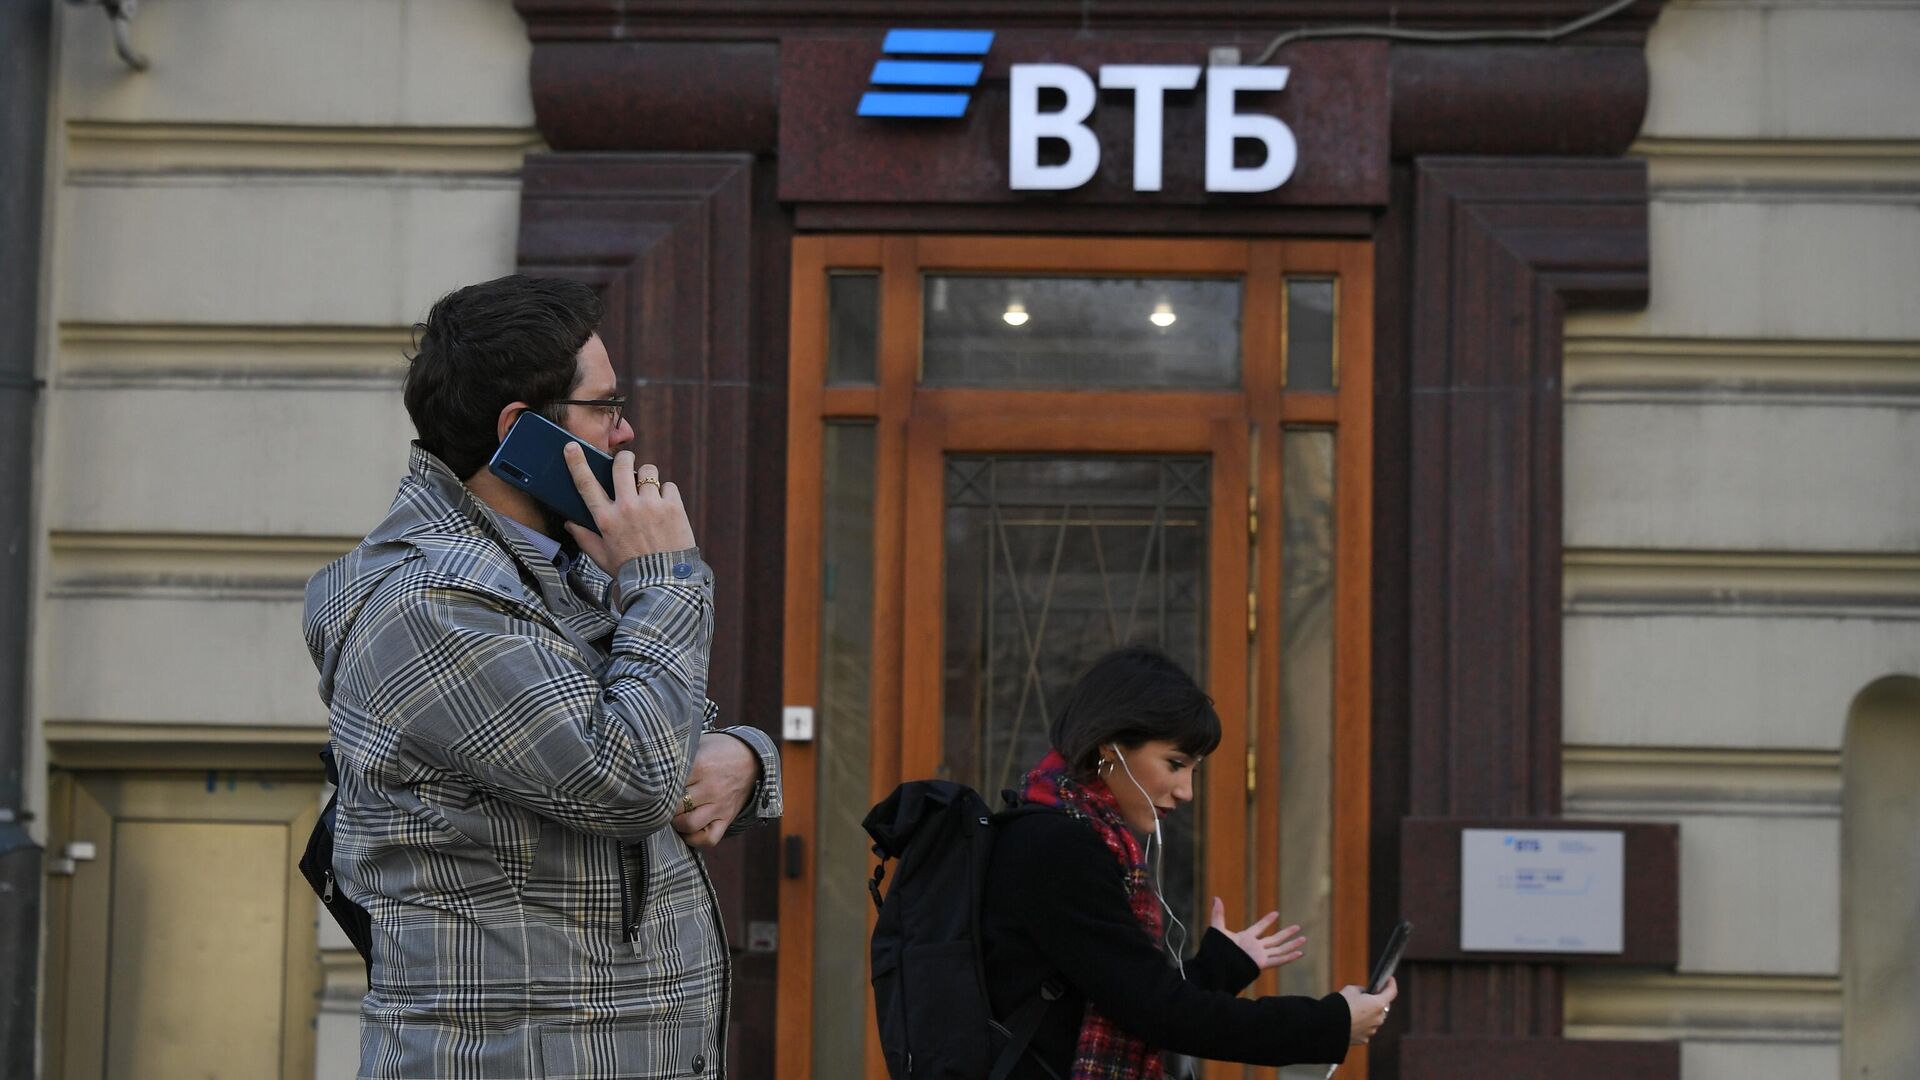 Прохожие у отделения банка ВТБ на одной из улиц в Москве - РИА Новости, 1920, 02.12.2020